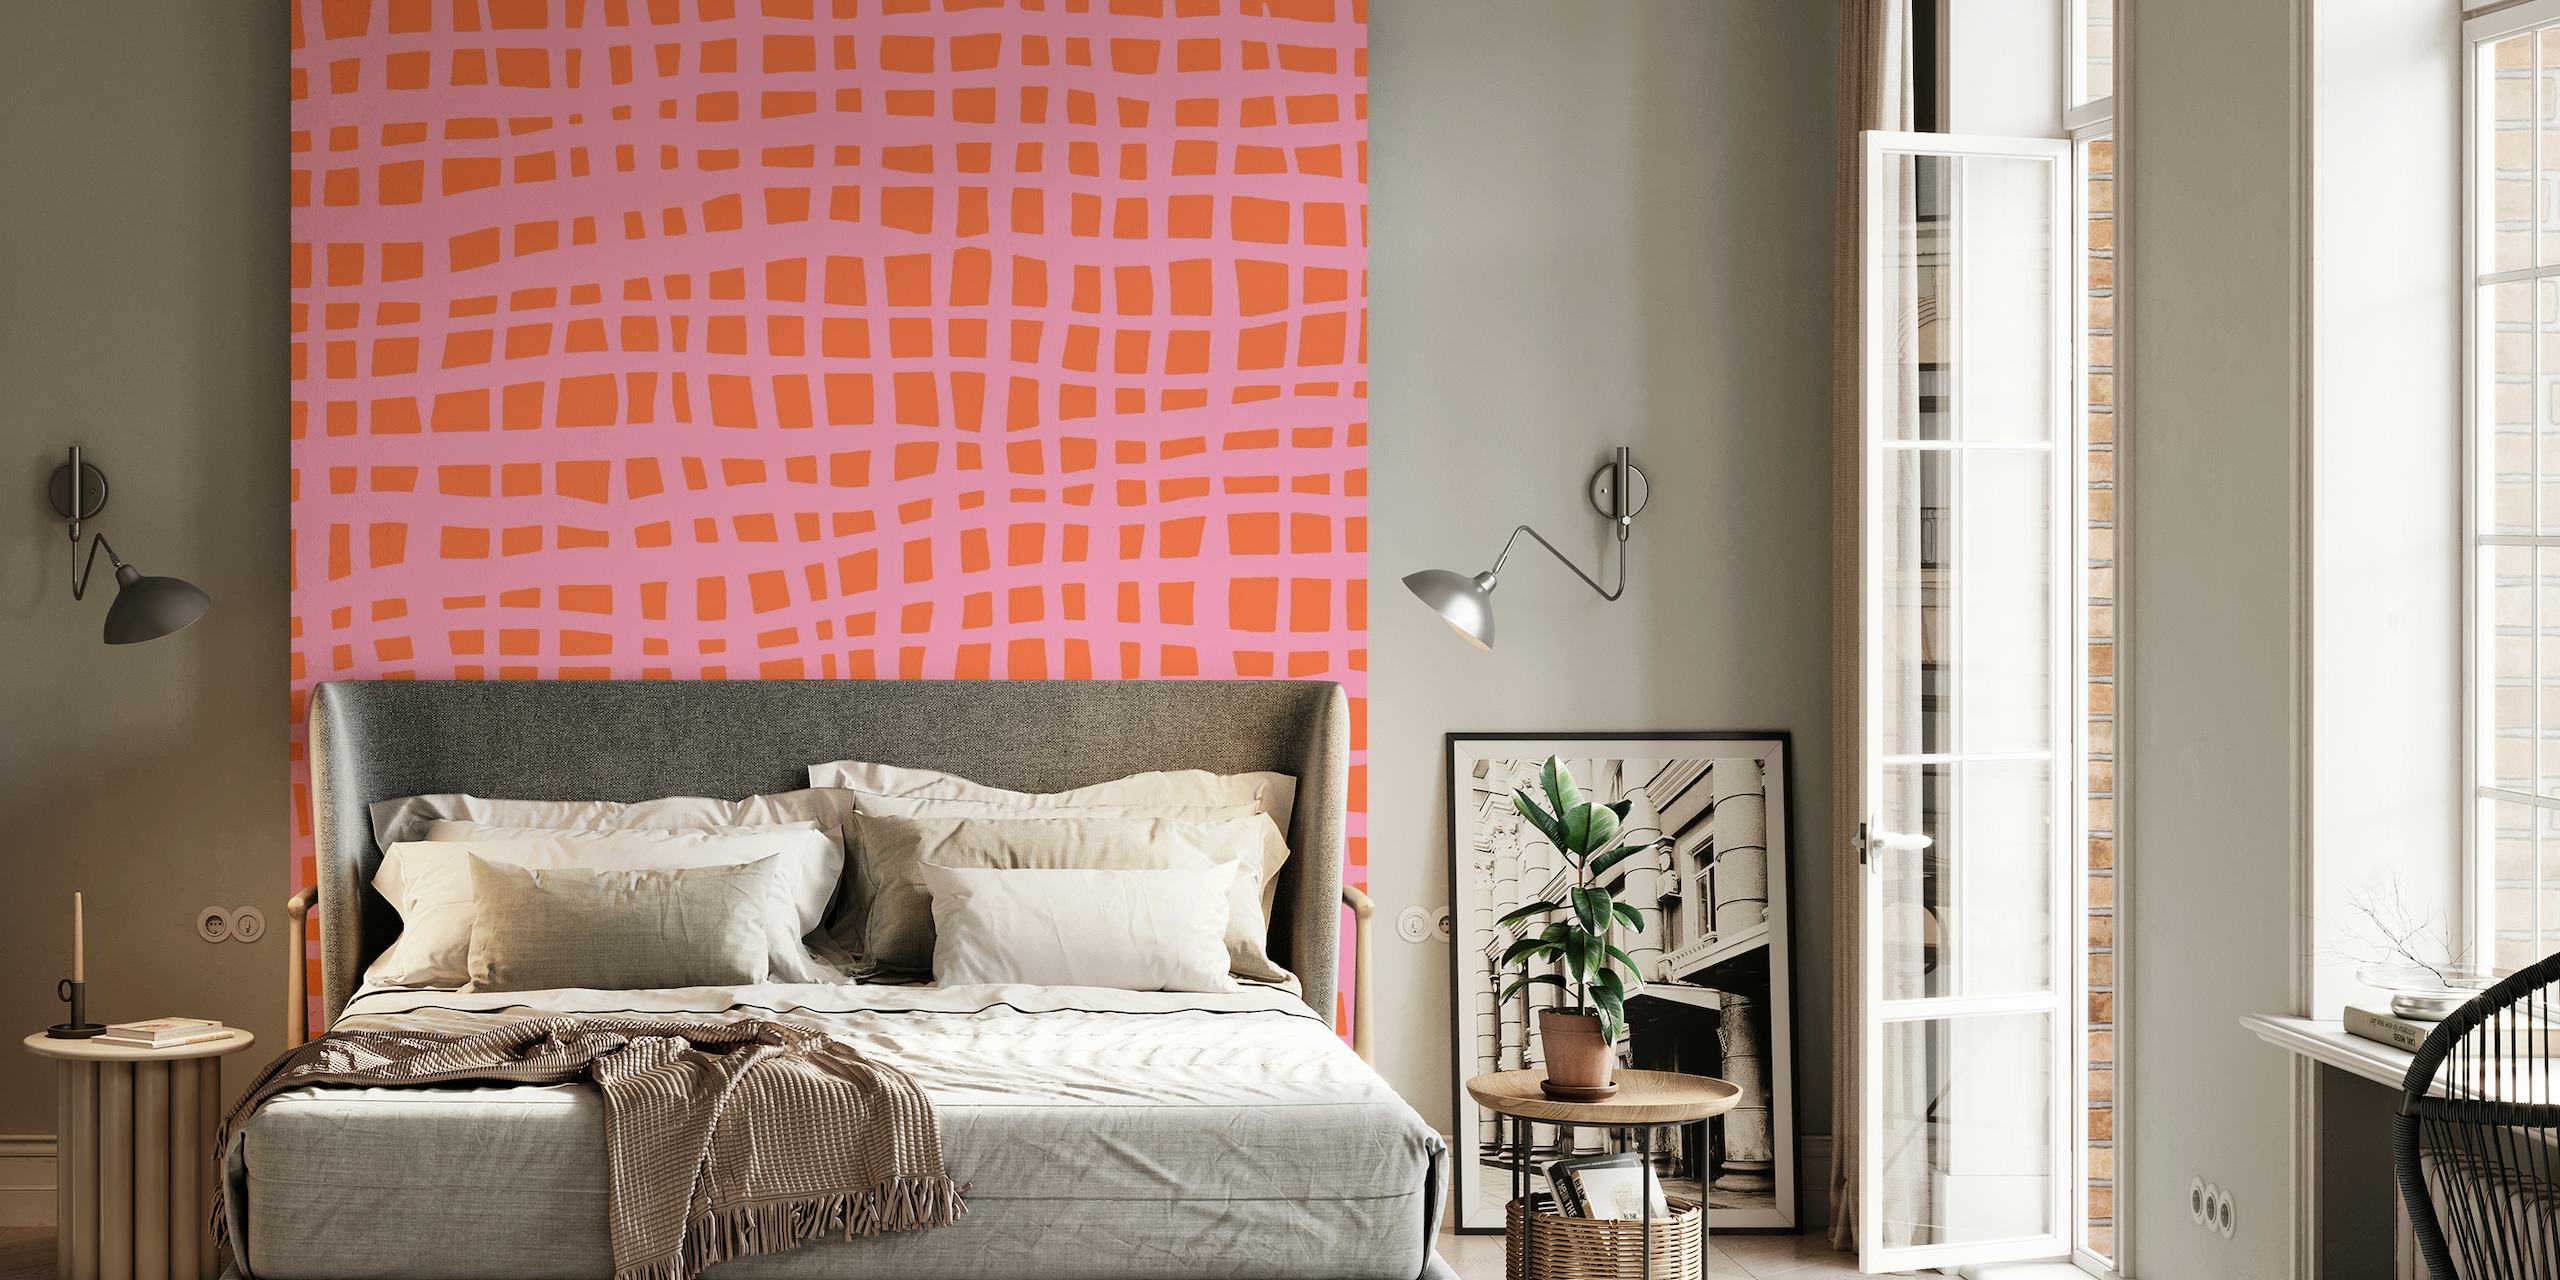 Retro grid pattern orange pink papel pintado